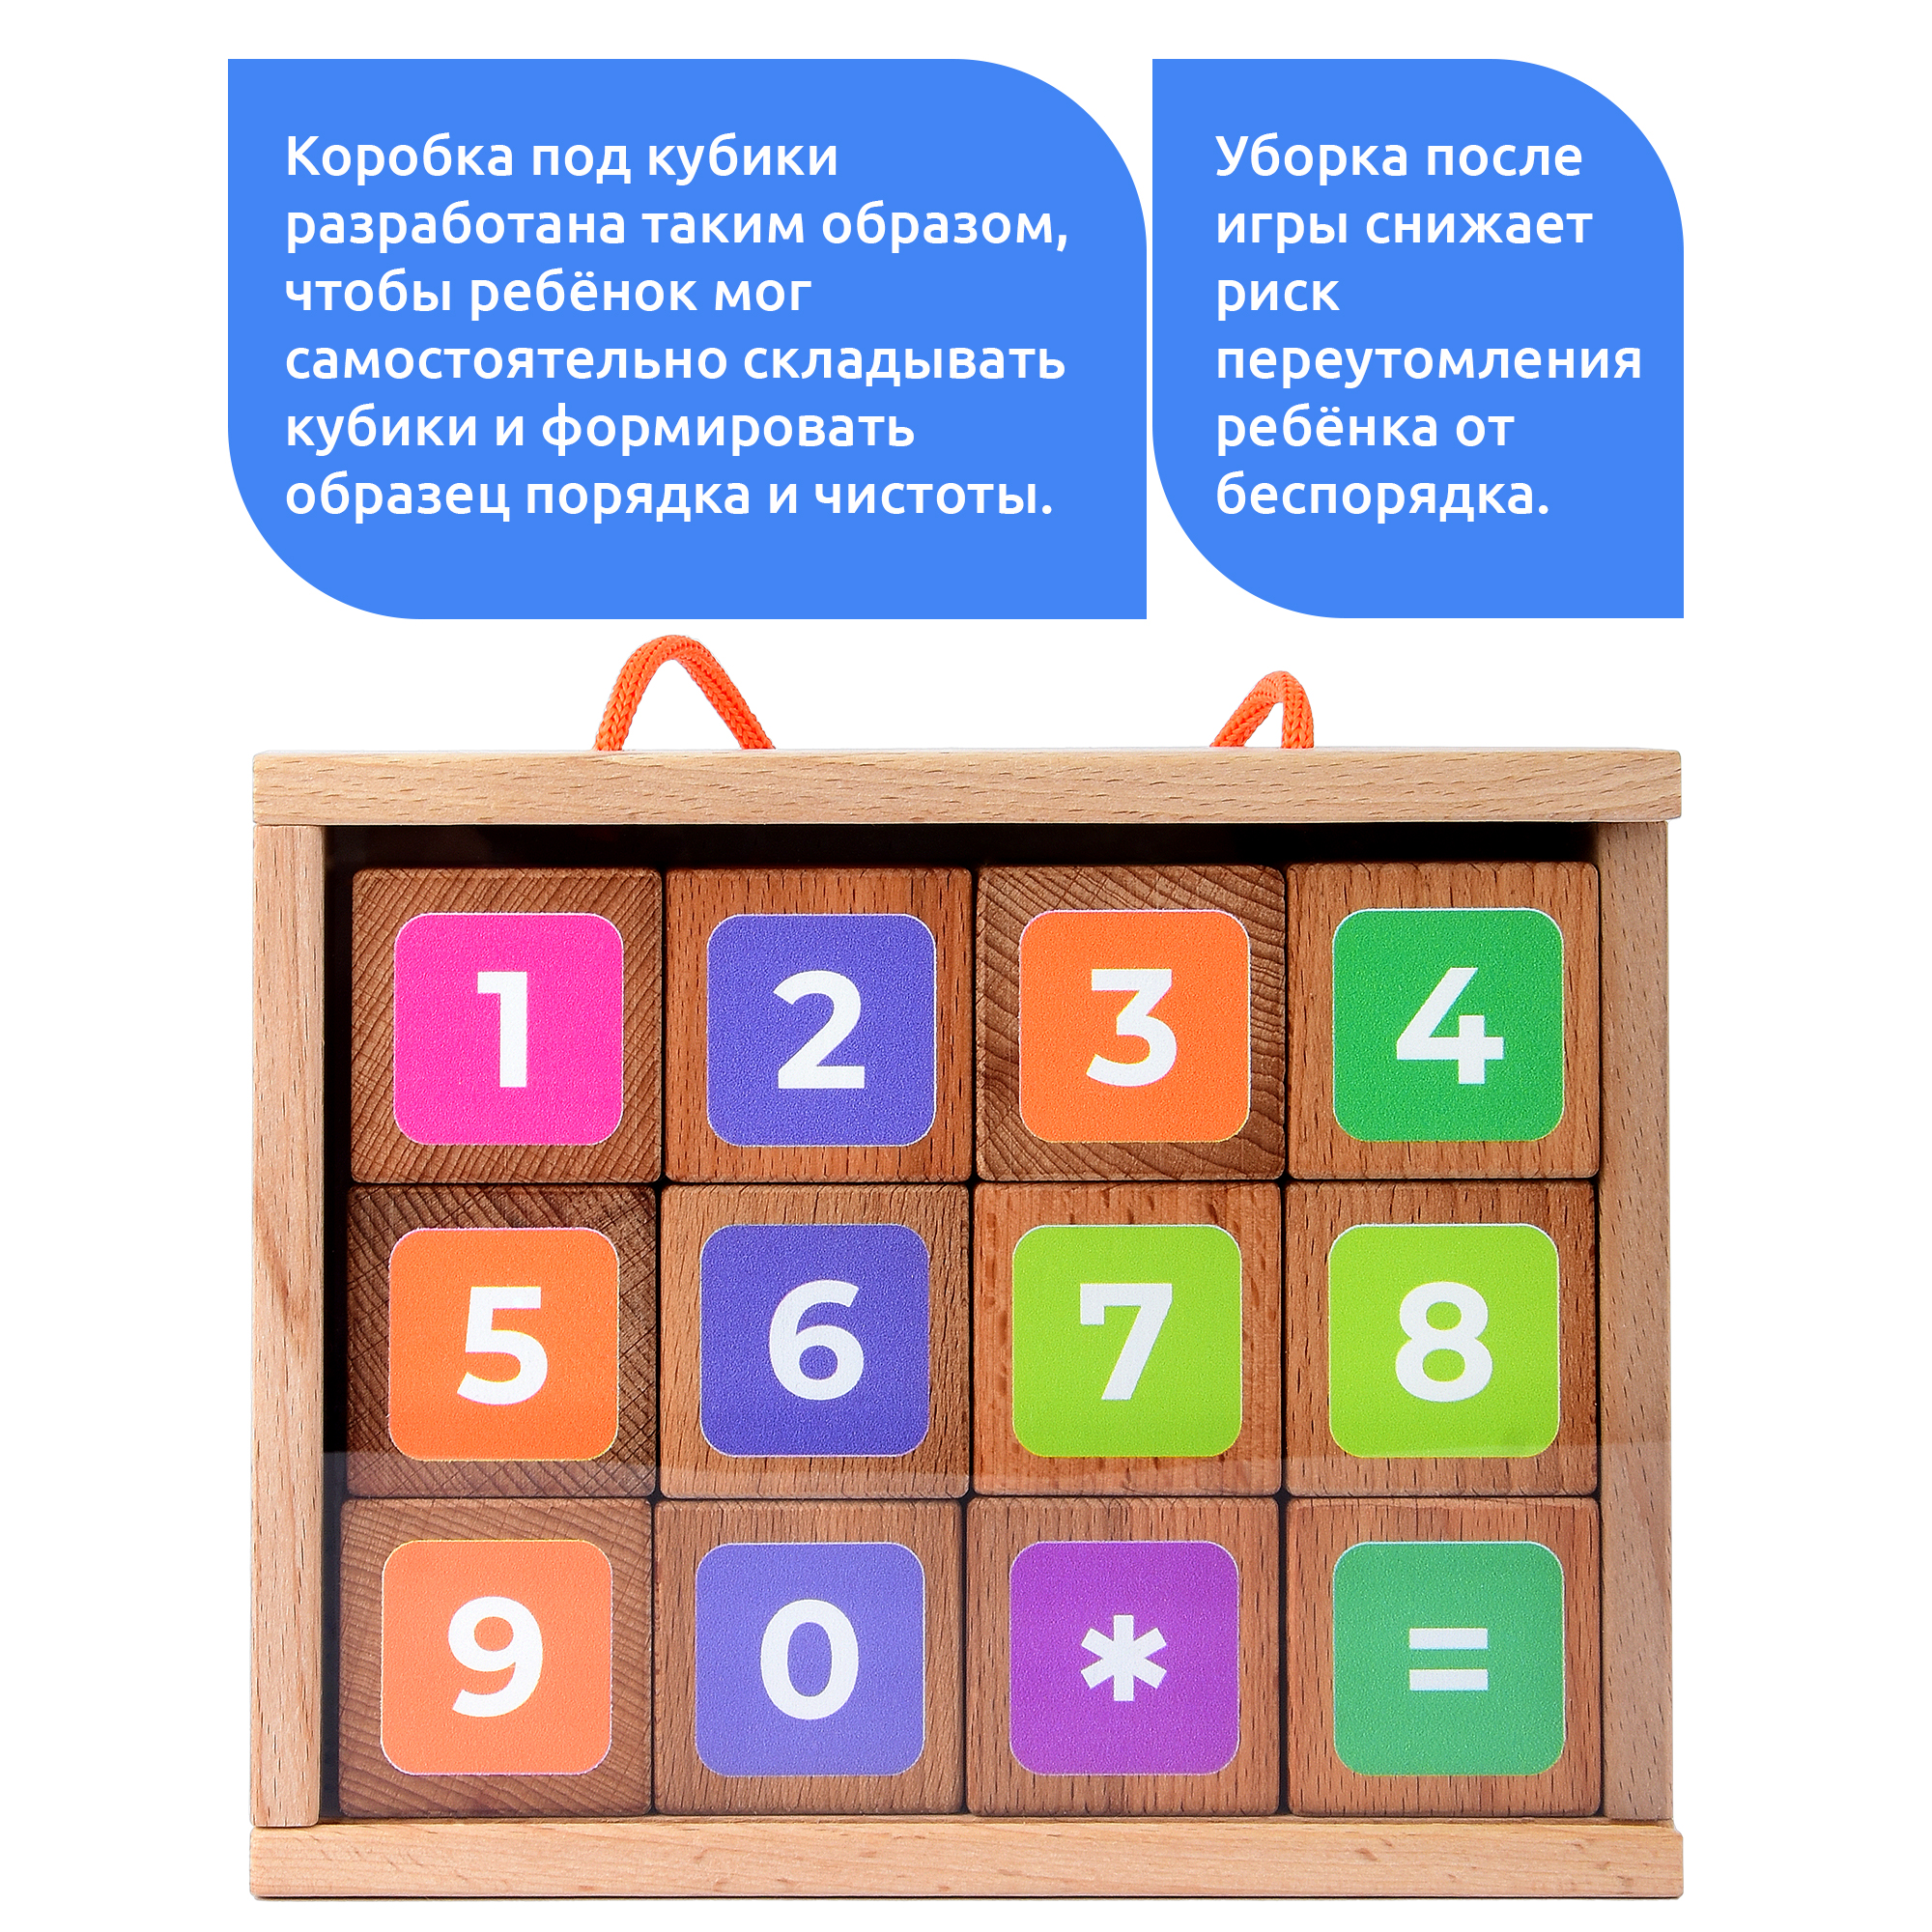 Набор из 12 деревянных кубиков с цифрами MEGA TOYS 15533